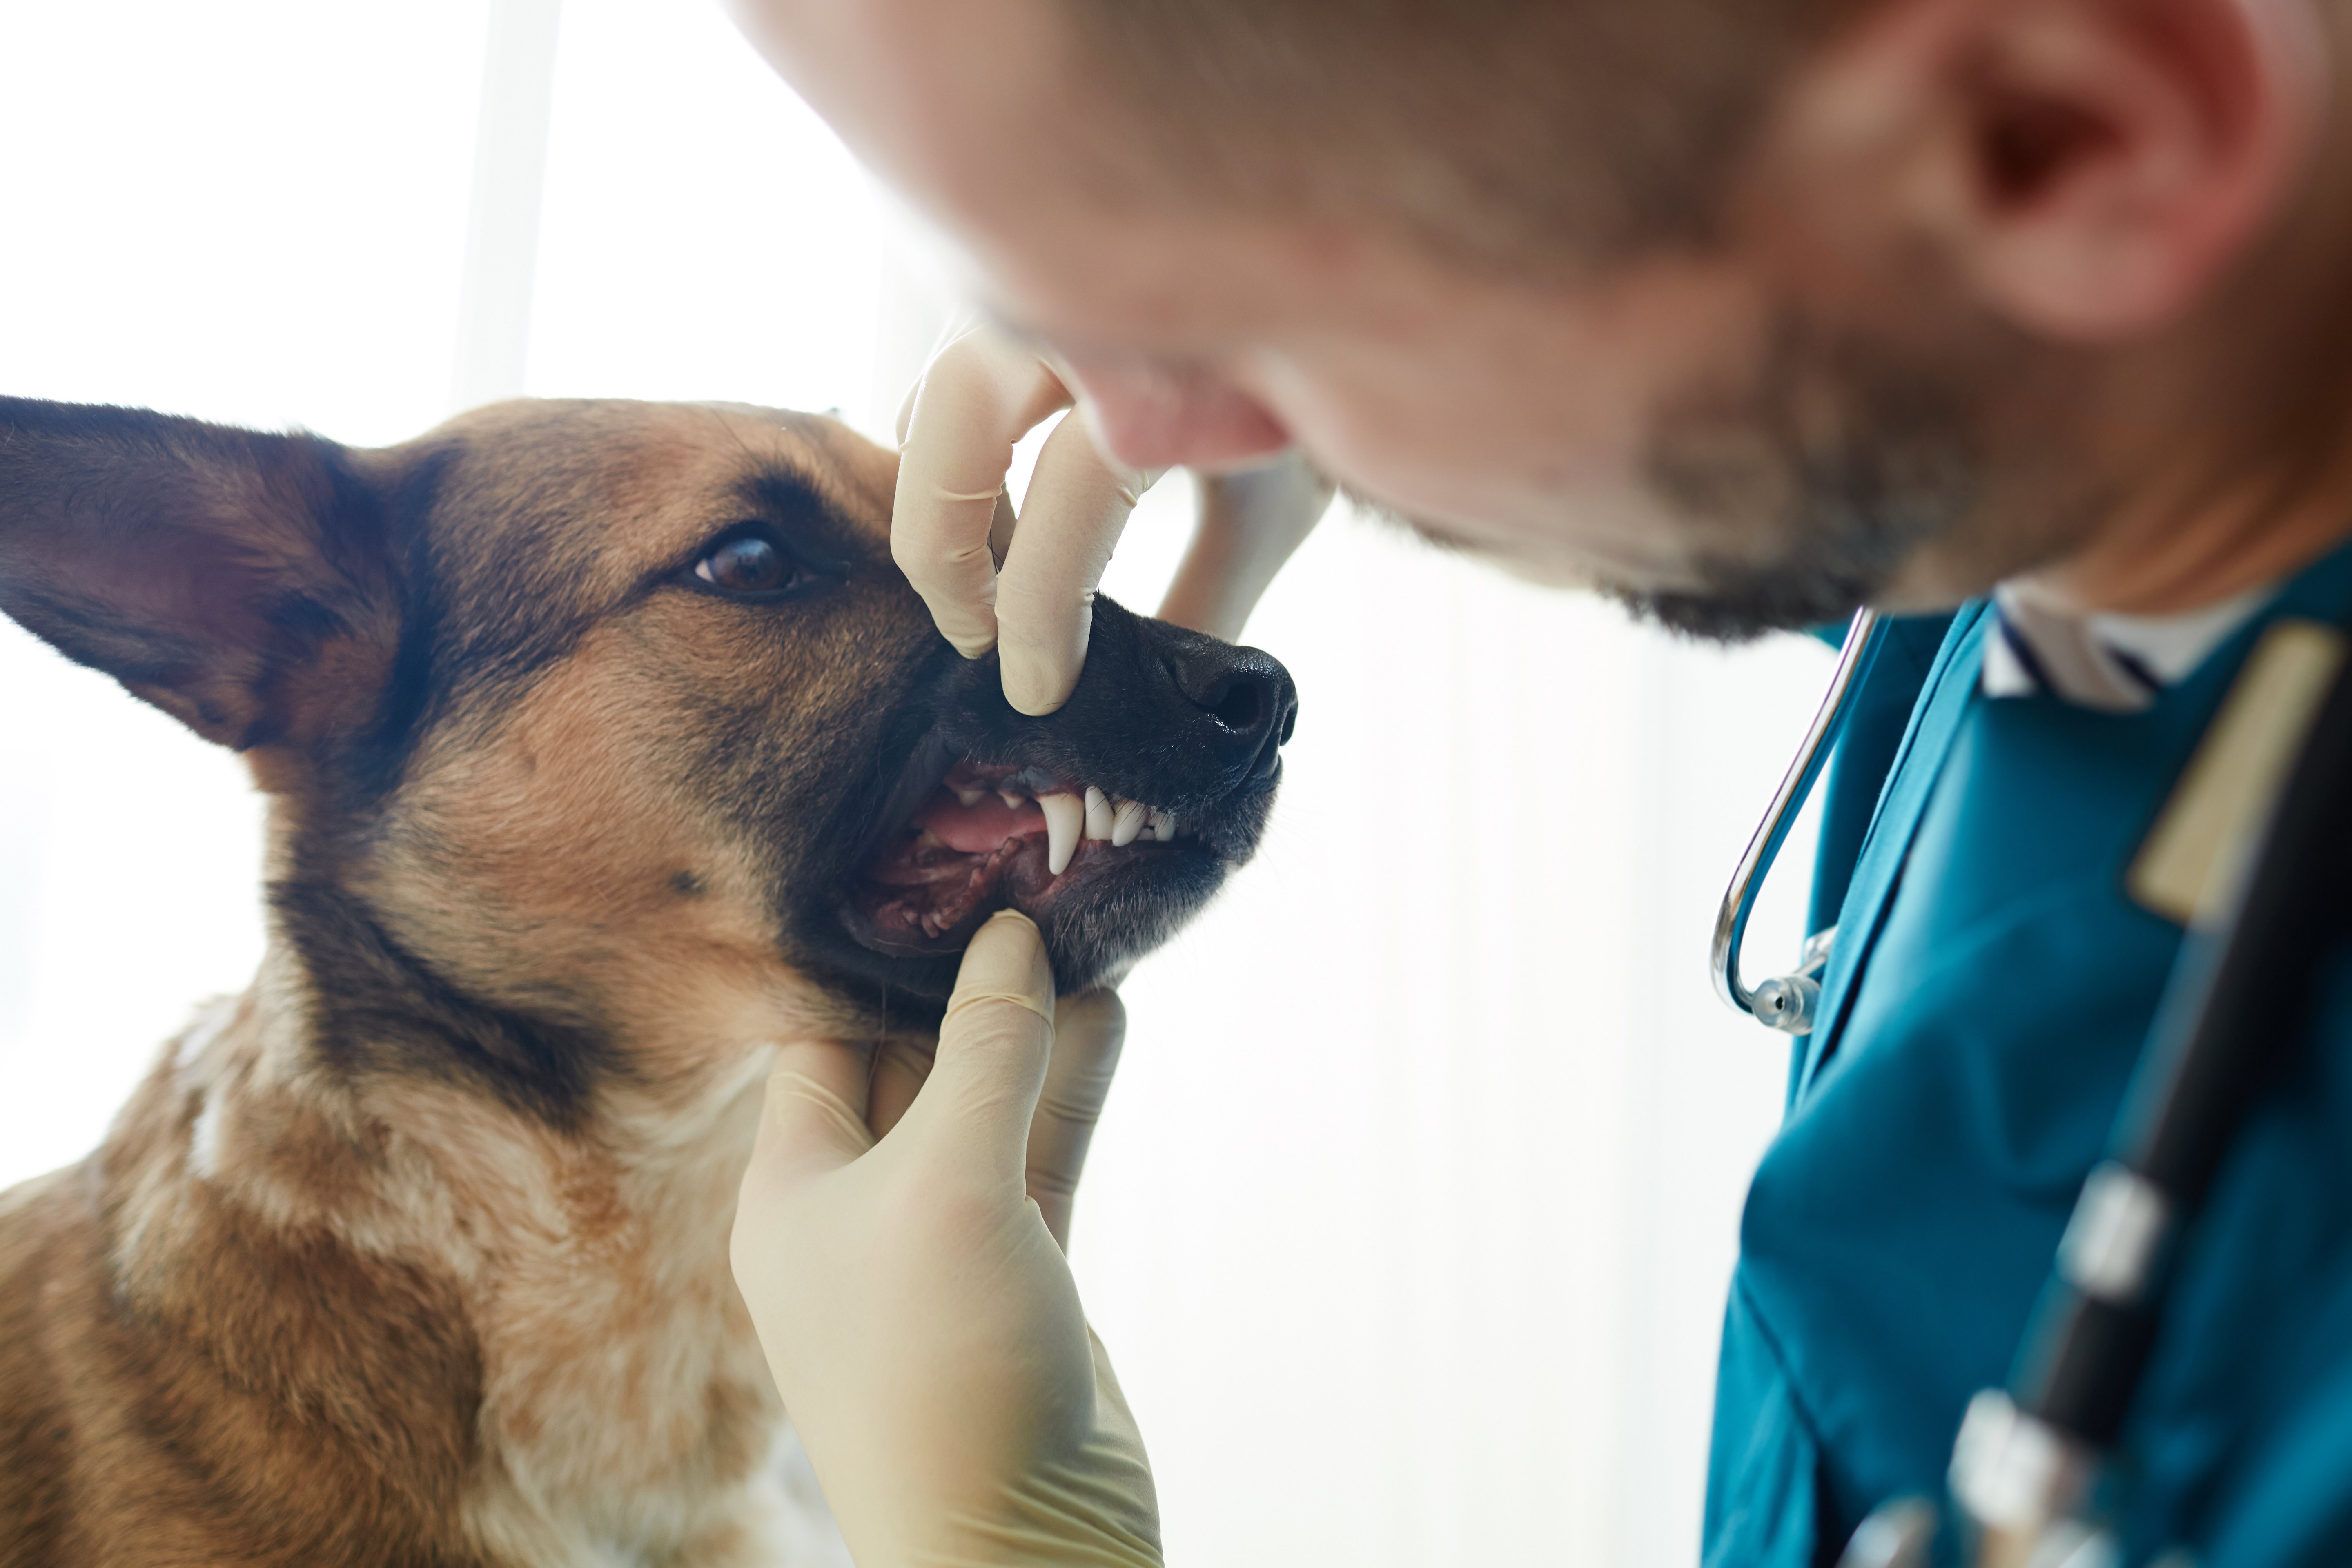 Si el sarro se agrava se puede realizar una limpieza bucal en el veterinario